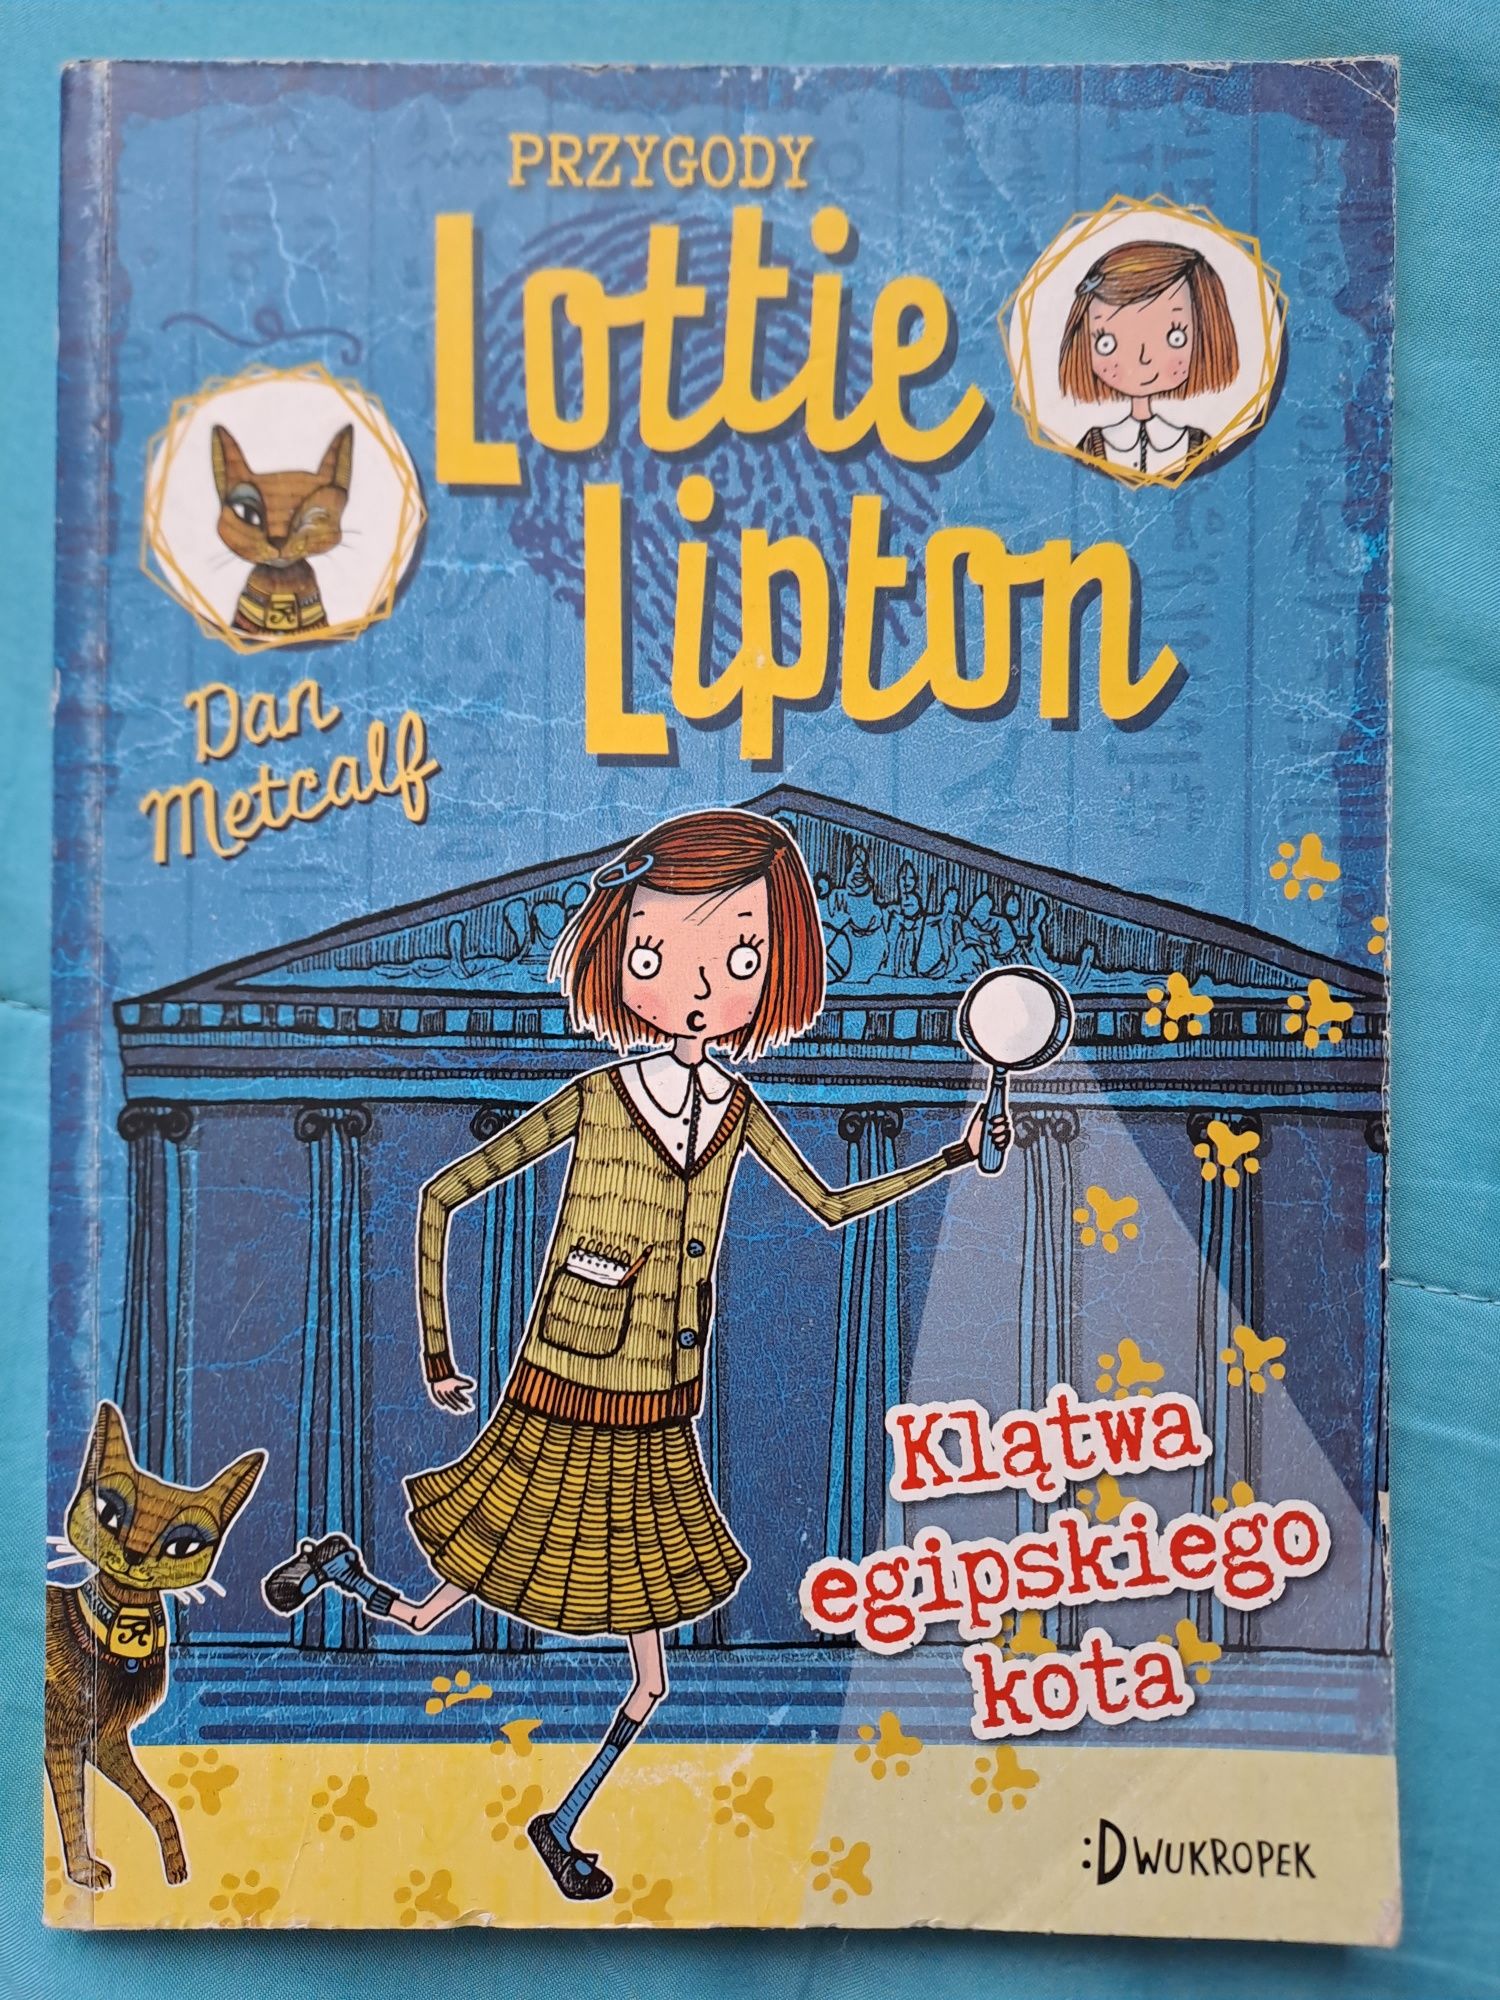 "Przygody Lottie Lipton - klątwa egipskiego kota" - Dan Metcalf